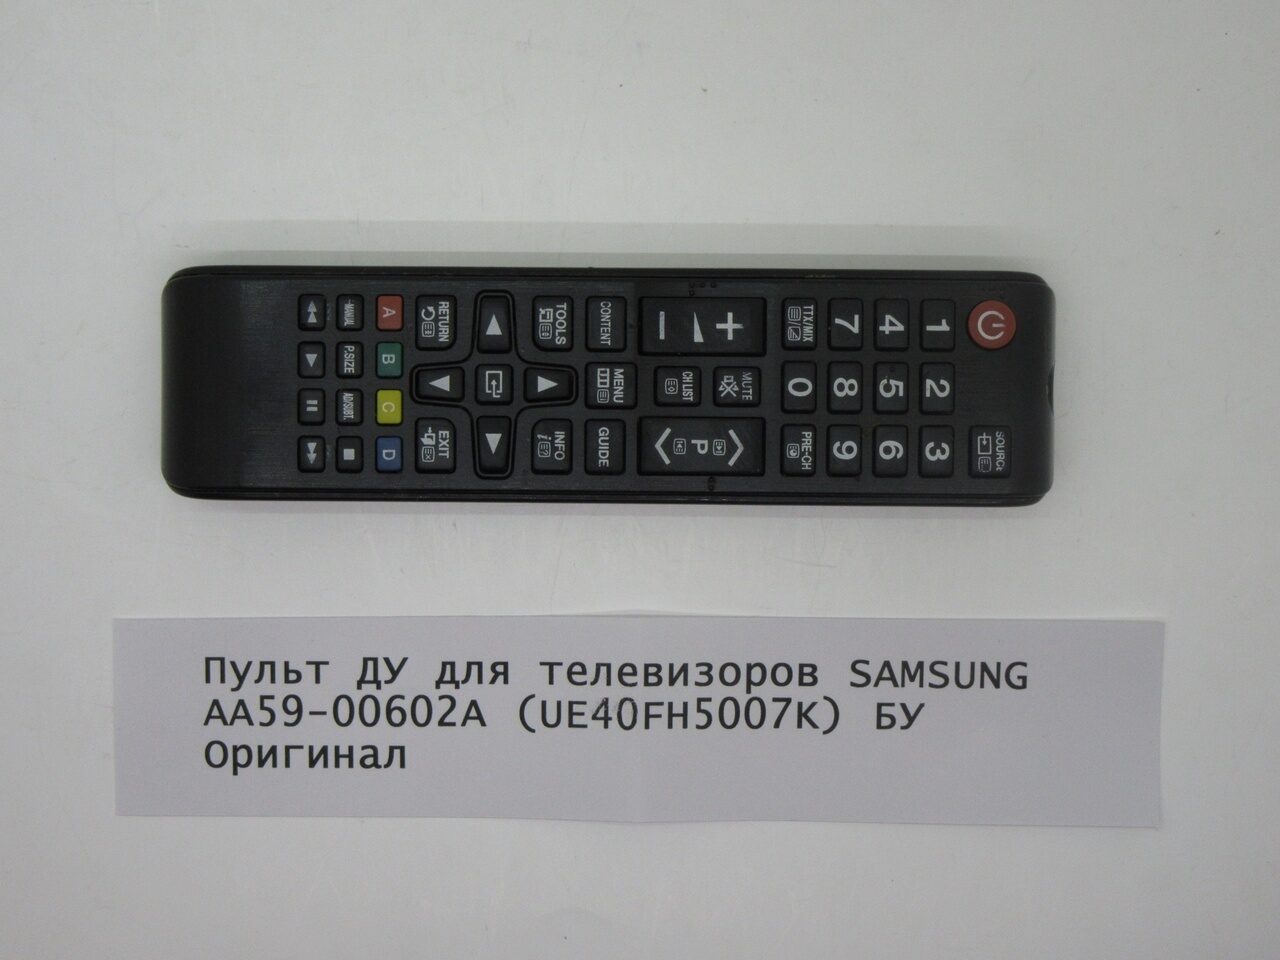 Пульт для телевизора samsung aa59. Aa59-00602a. Пульт Samsung a59-00602a. Aa59-00602a пульт. Пульт для Samsung aa59-00602a.